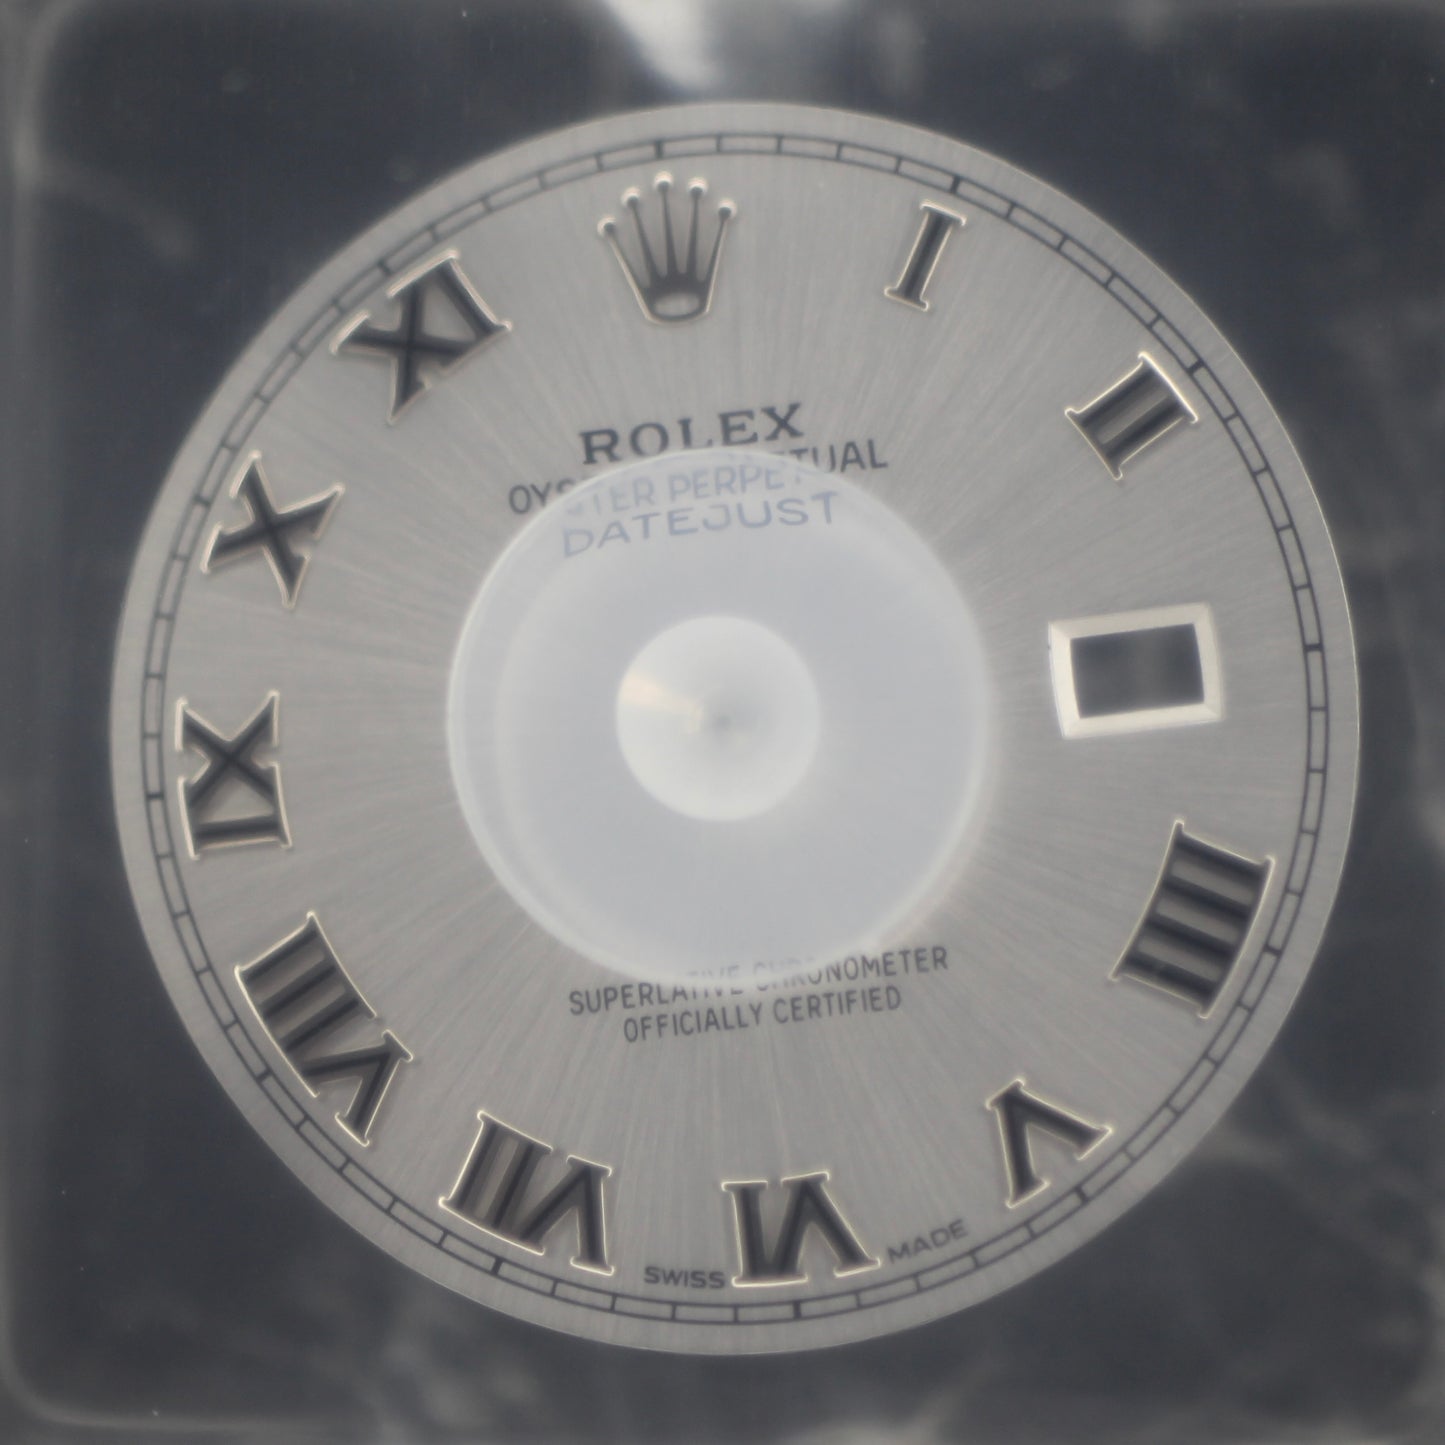 NEW Rolex 13-16008-89 Dial Datejust 36mm 16000 16200 116200 Quadrante Rhodium Romani In Blister